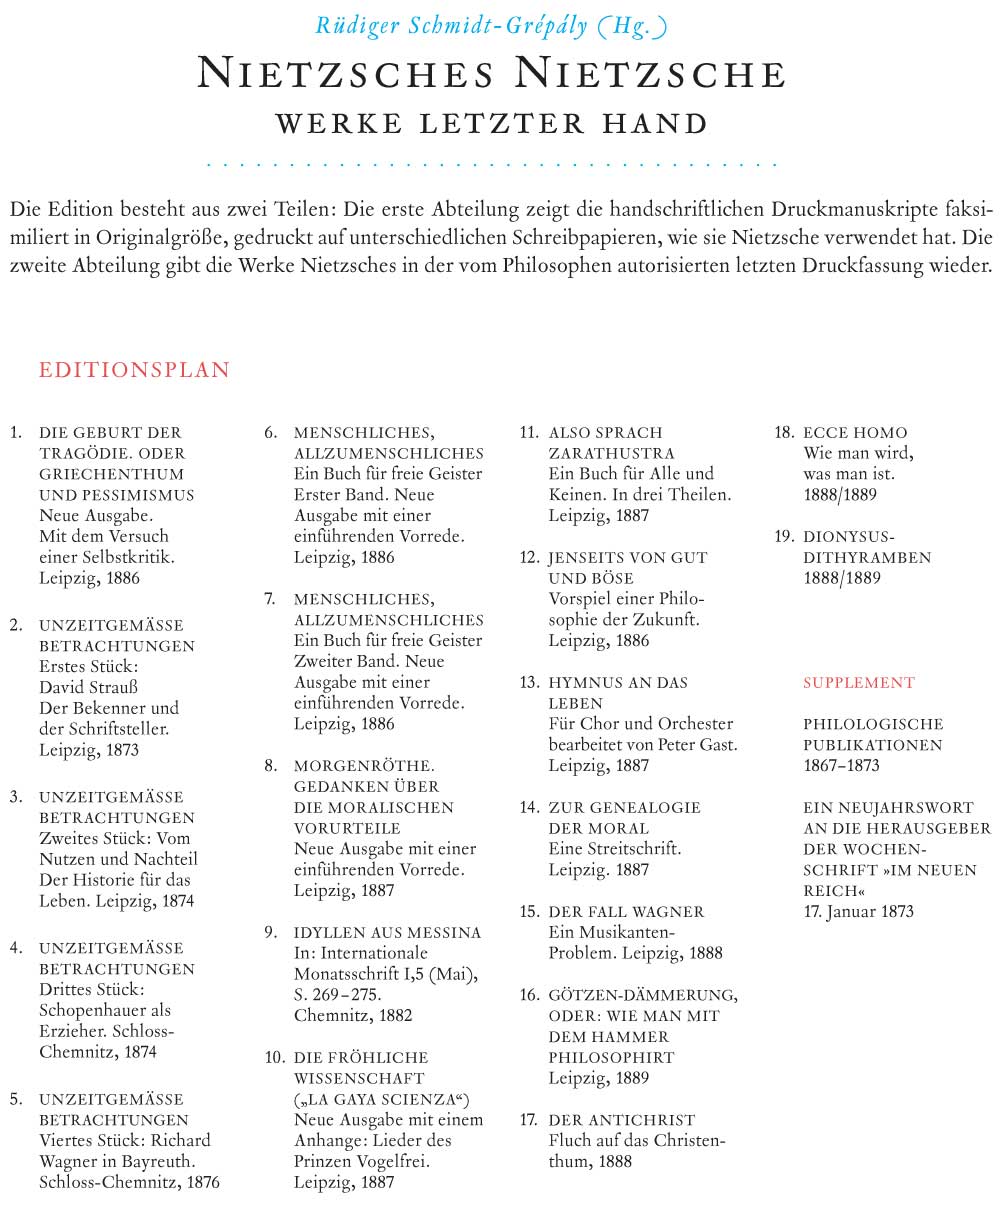 Nietzsches Nietzsche - Werke letzter Hand (hrsg. von Rüdiger Schmidt-Grépály), Bild: Editionsplan für L.S.D. Lagerfeld, Steidl, Druckerei Verlag (Stand: 2012).